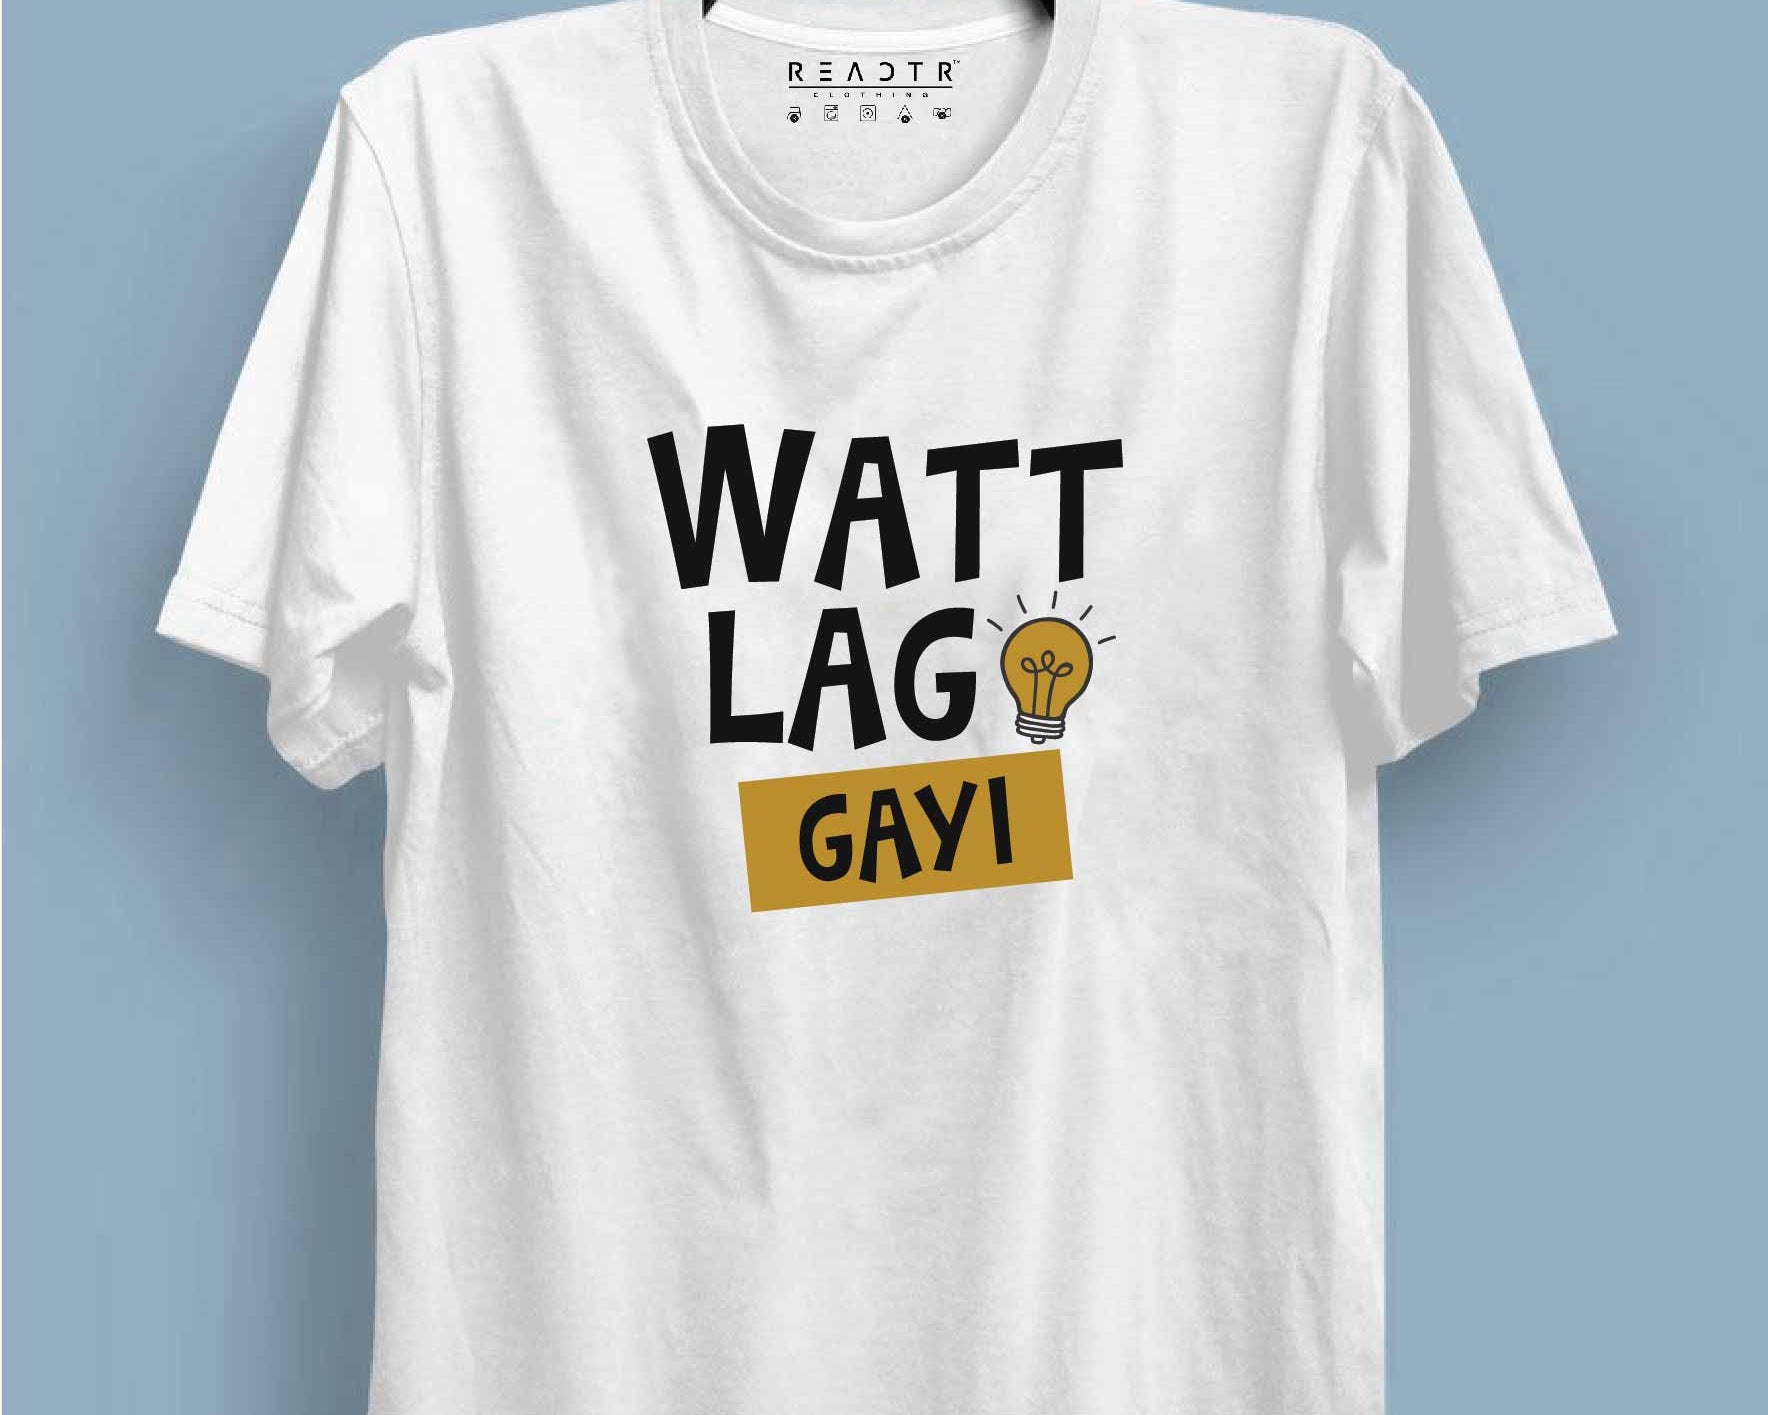 Watt Lag Gayi Reactr Tshirts For Men - Eyewearlabs